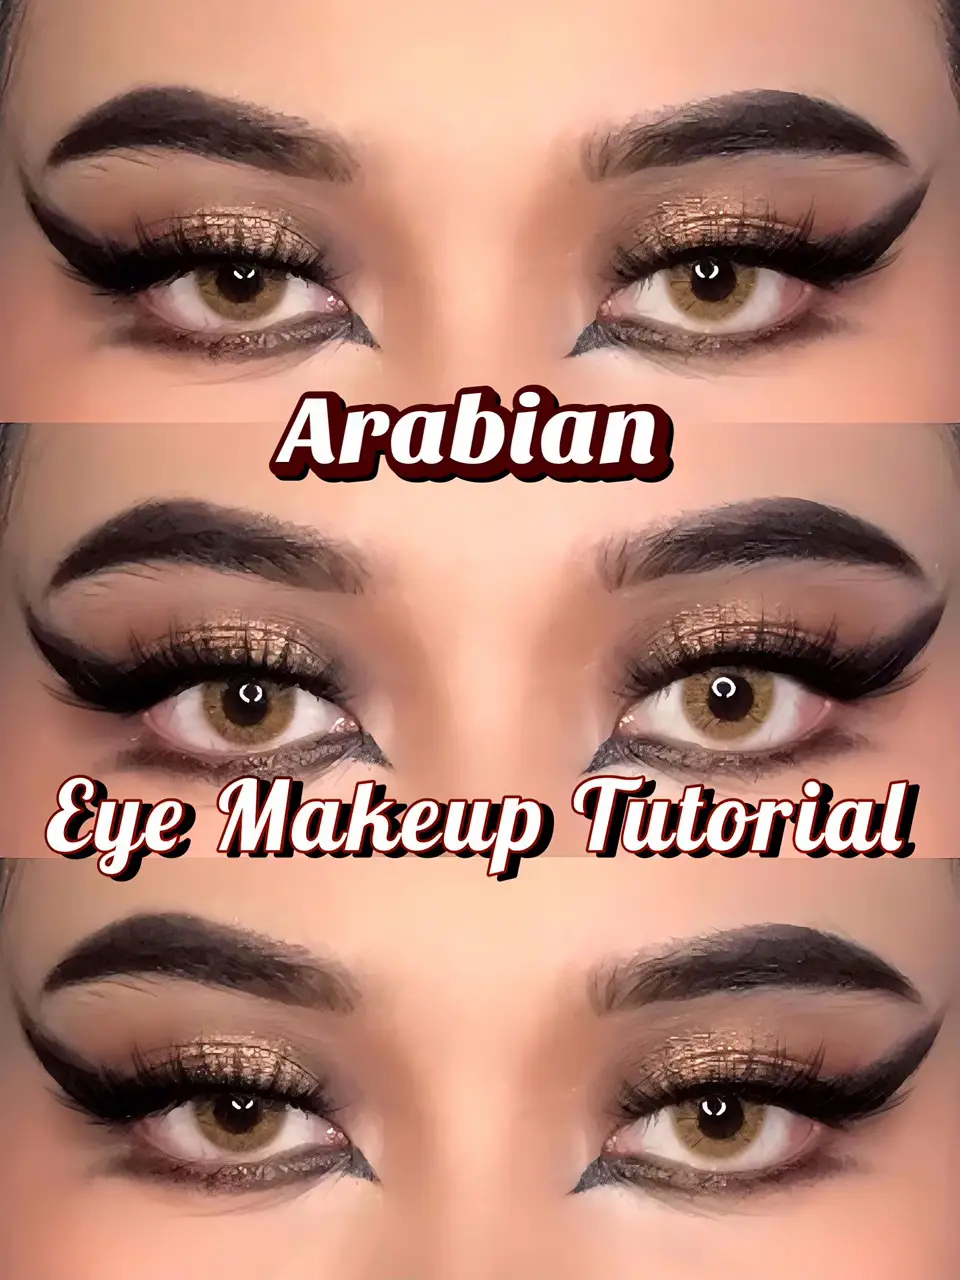 Arabian Eye Makeup Look Tutorial